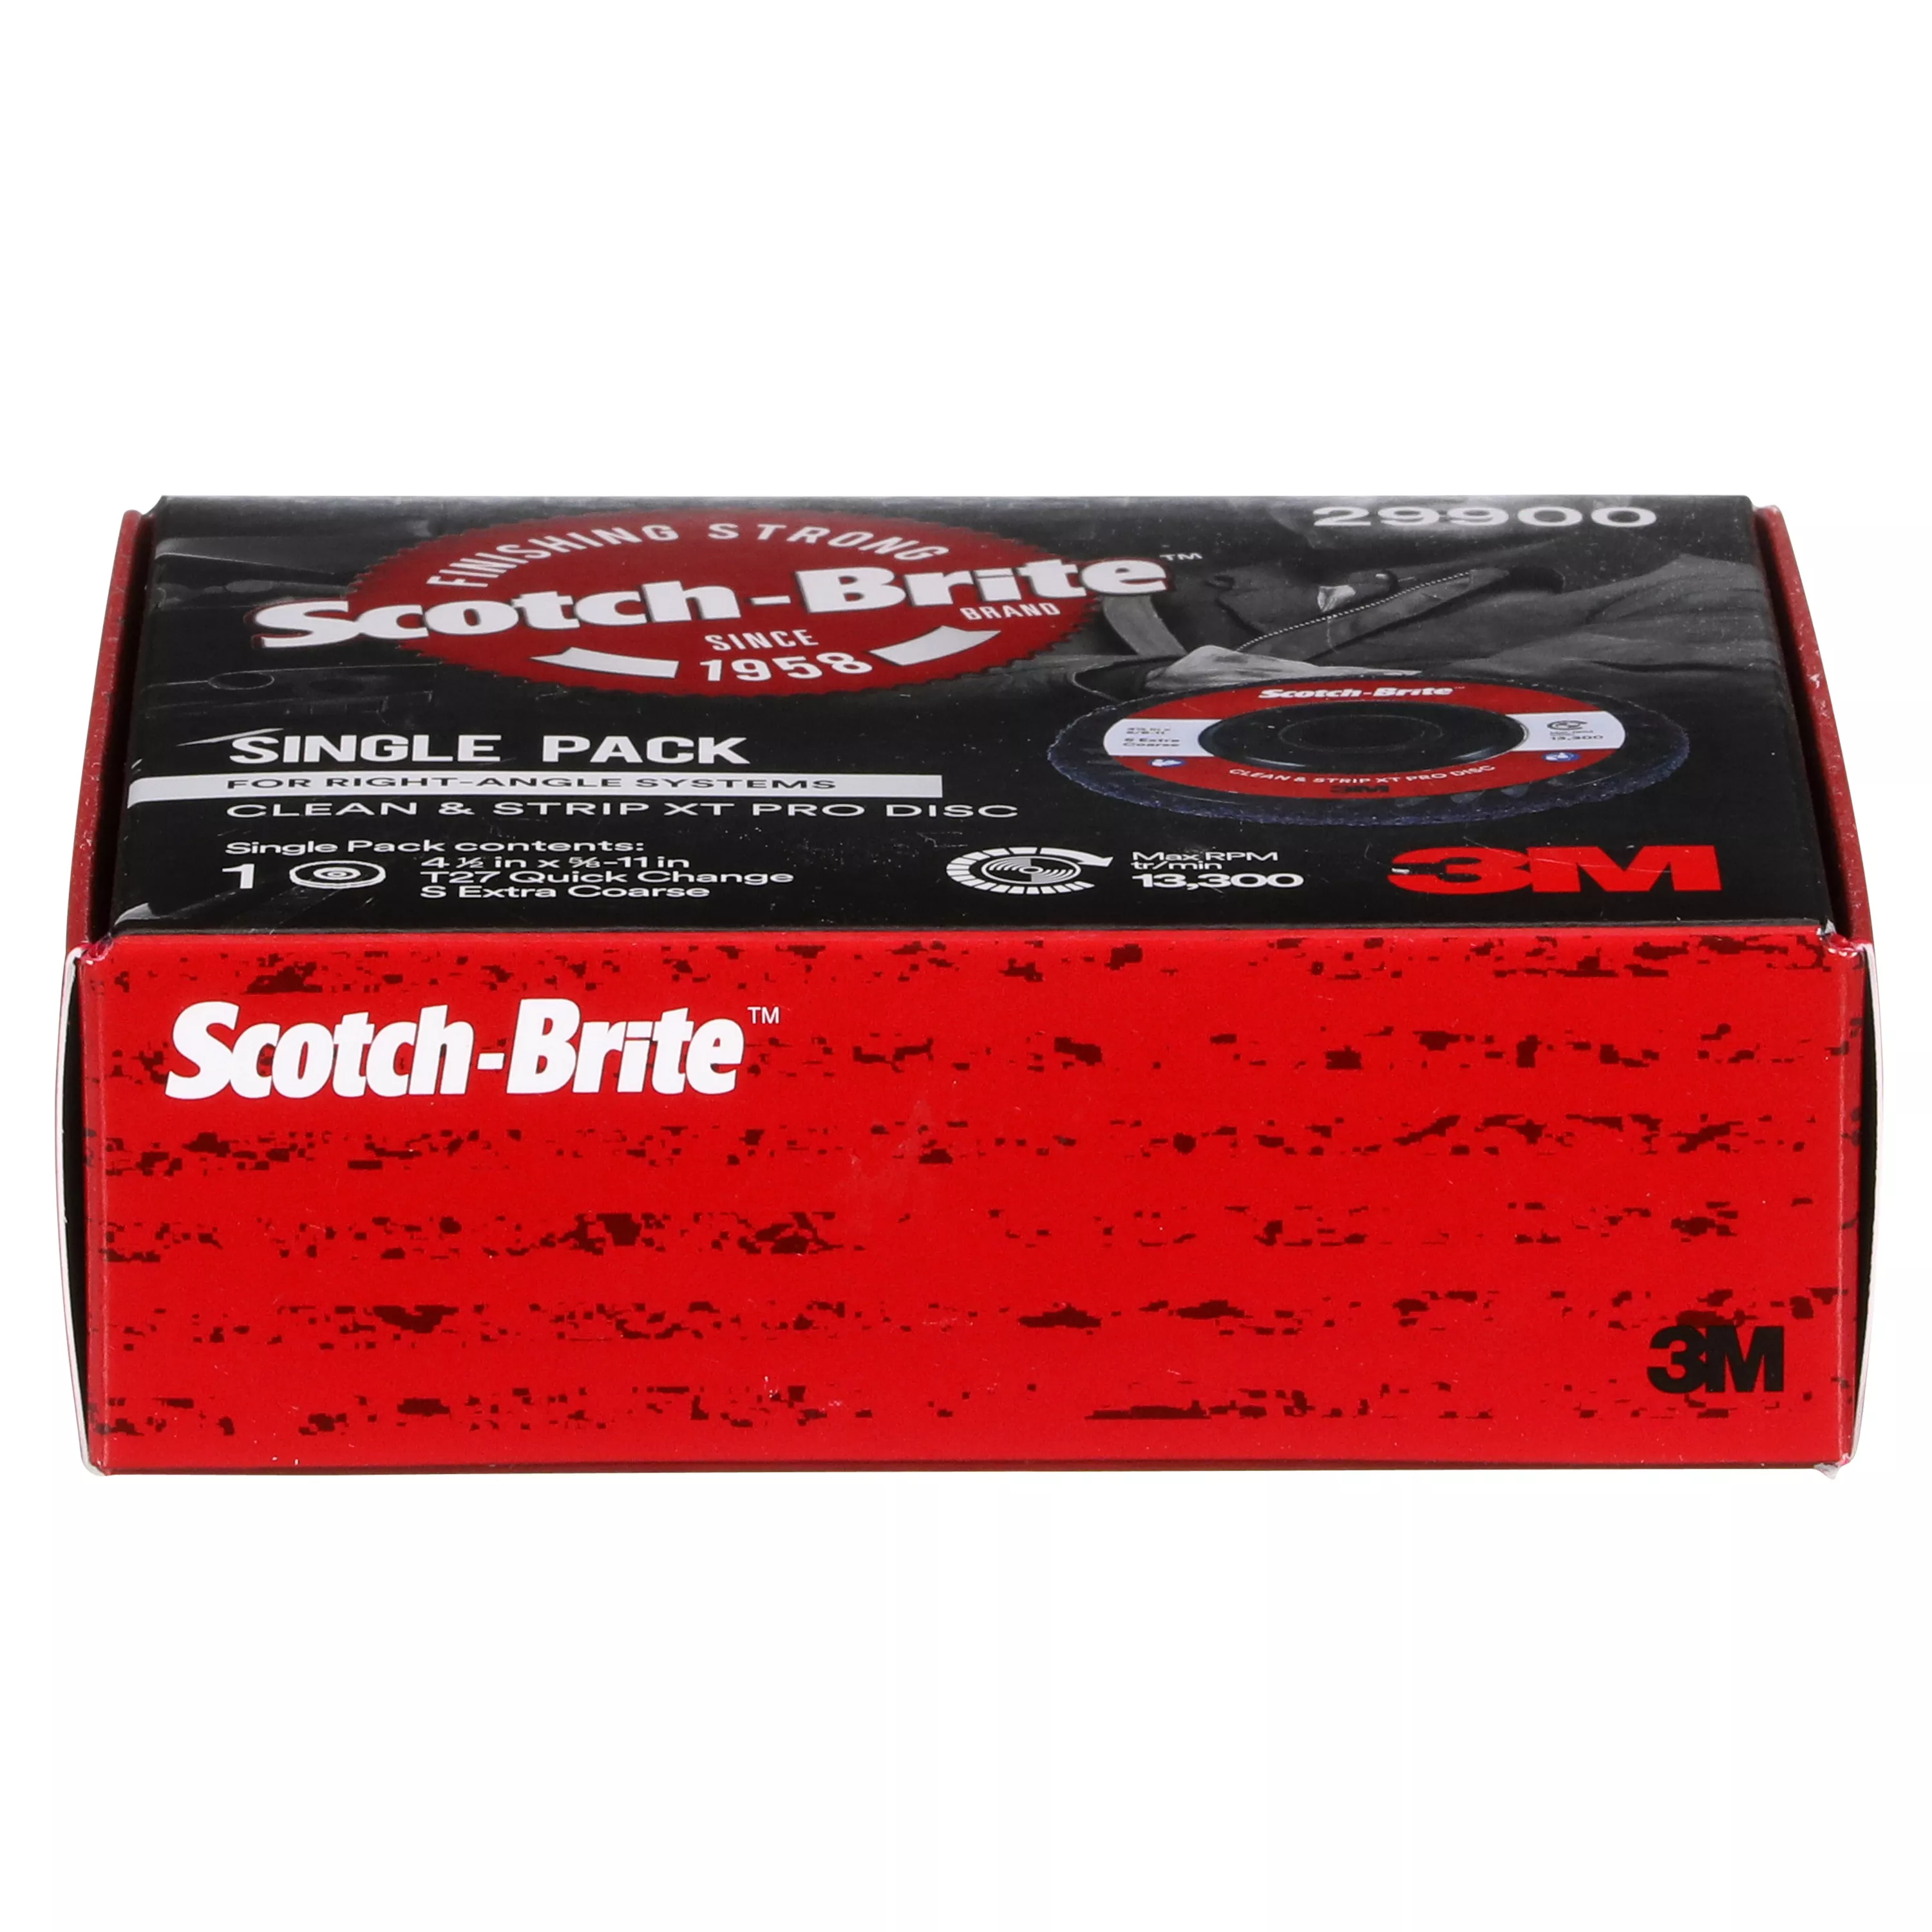 SKU 7100176093 | Scotch-Brite™ Clean and Strip XT Pro Disc